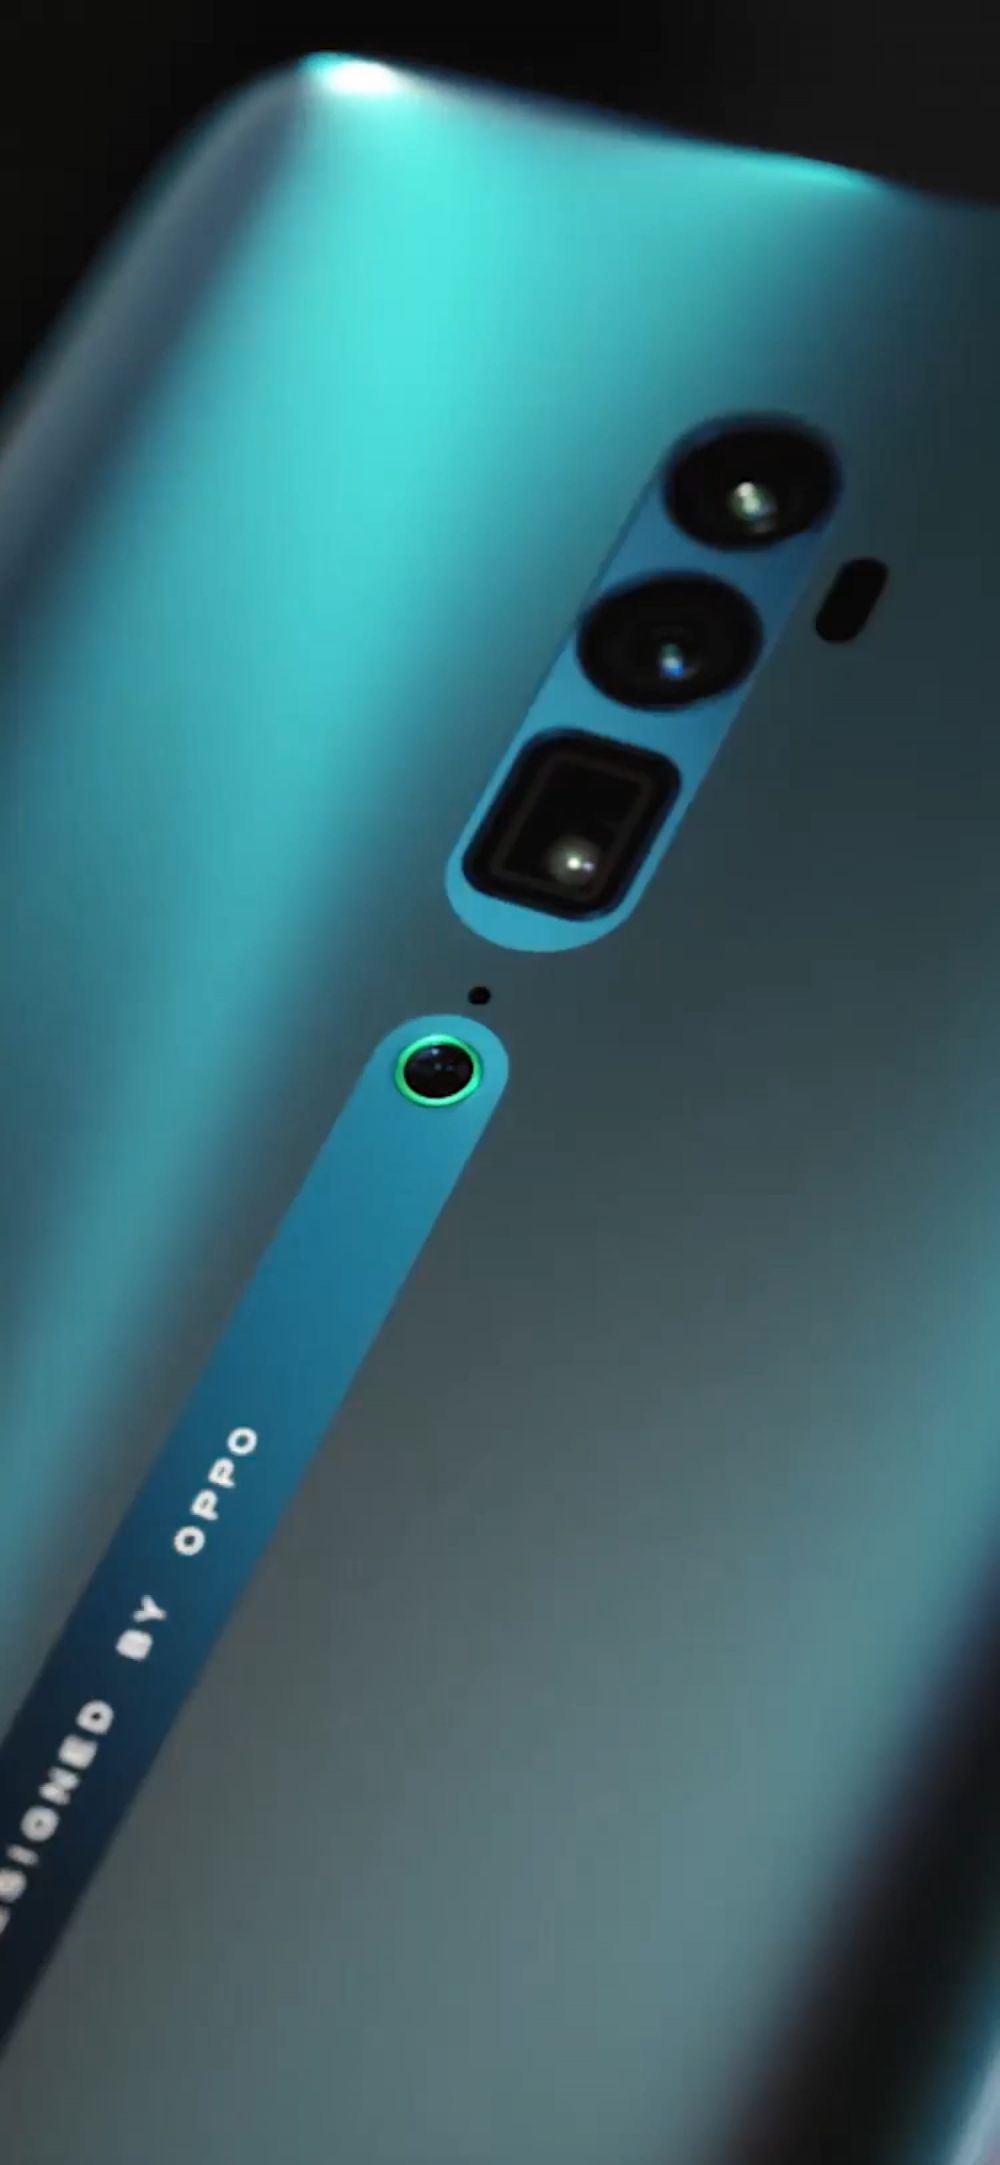 15 Harga smartphone Oppo terbaru 2021 lengkap dengan spesifikasinya